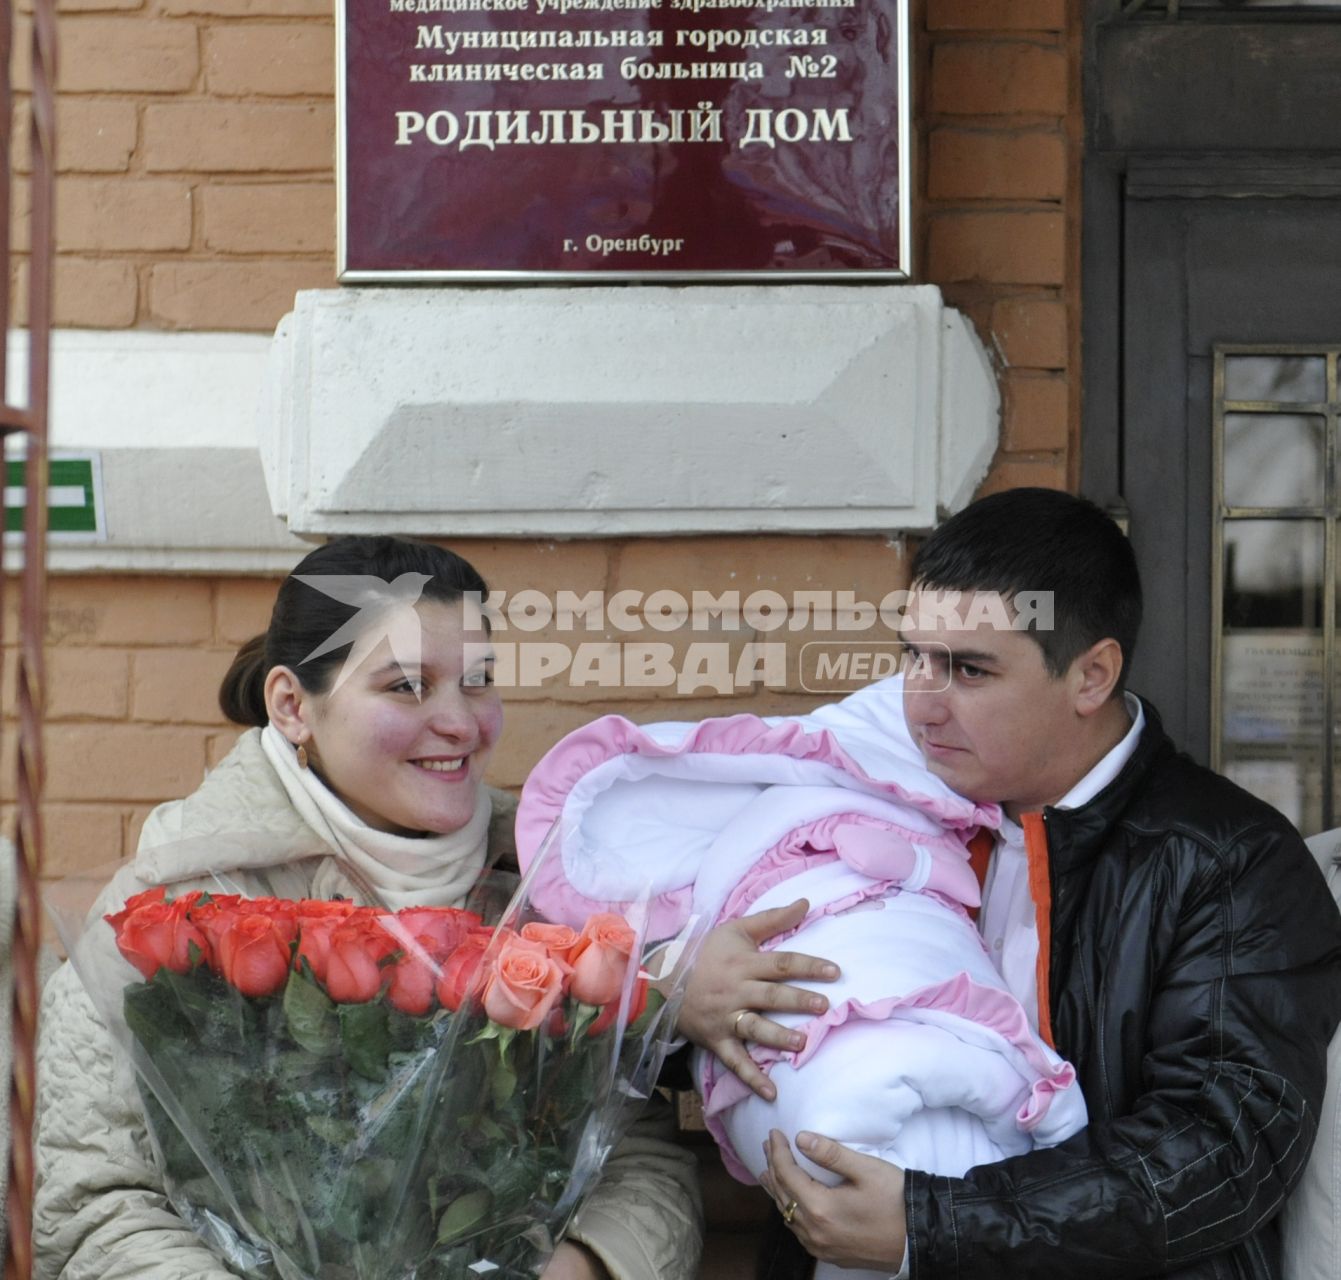 Высписка новорожденного с мамой из роддома. На снимке: Счастливые родители перед роддомом. Отец держит ребенка завернутого в конверт, мать держит букет цветов из роз.